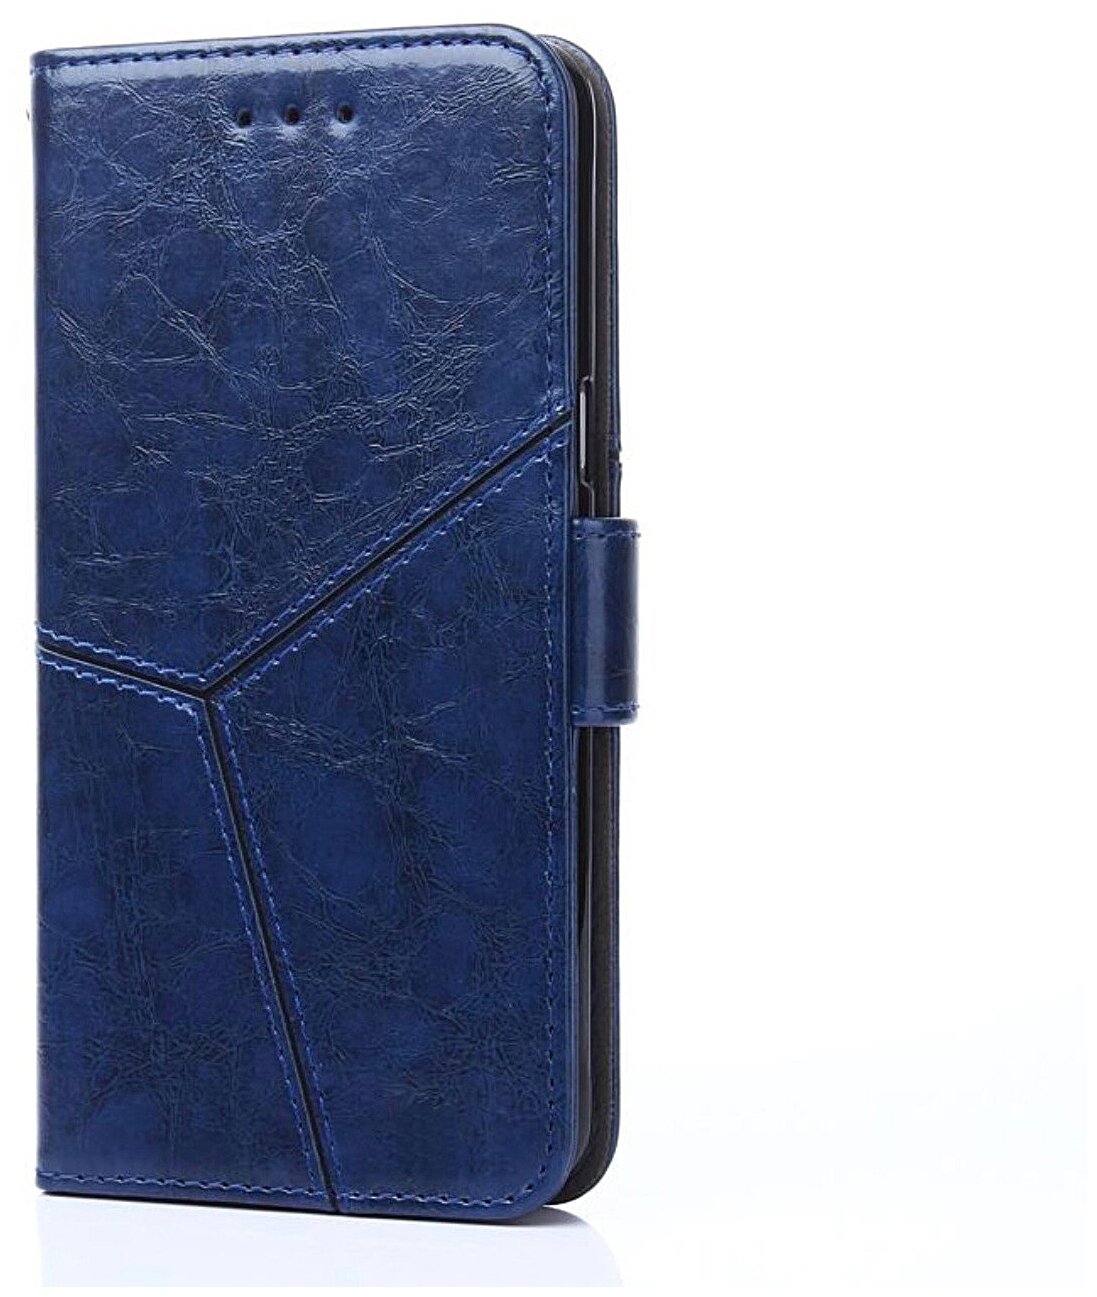 Чехол-книжка Чехол. ру для Samsung Galaxy M31 SM-M315 (2020) из качественной импортной кожи прошитый по контуру с необычным геометрическим швом цвет.